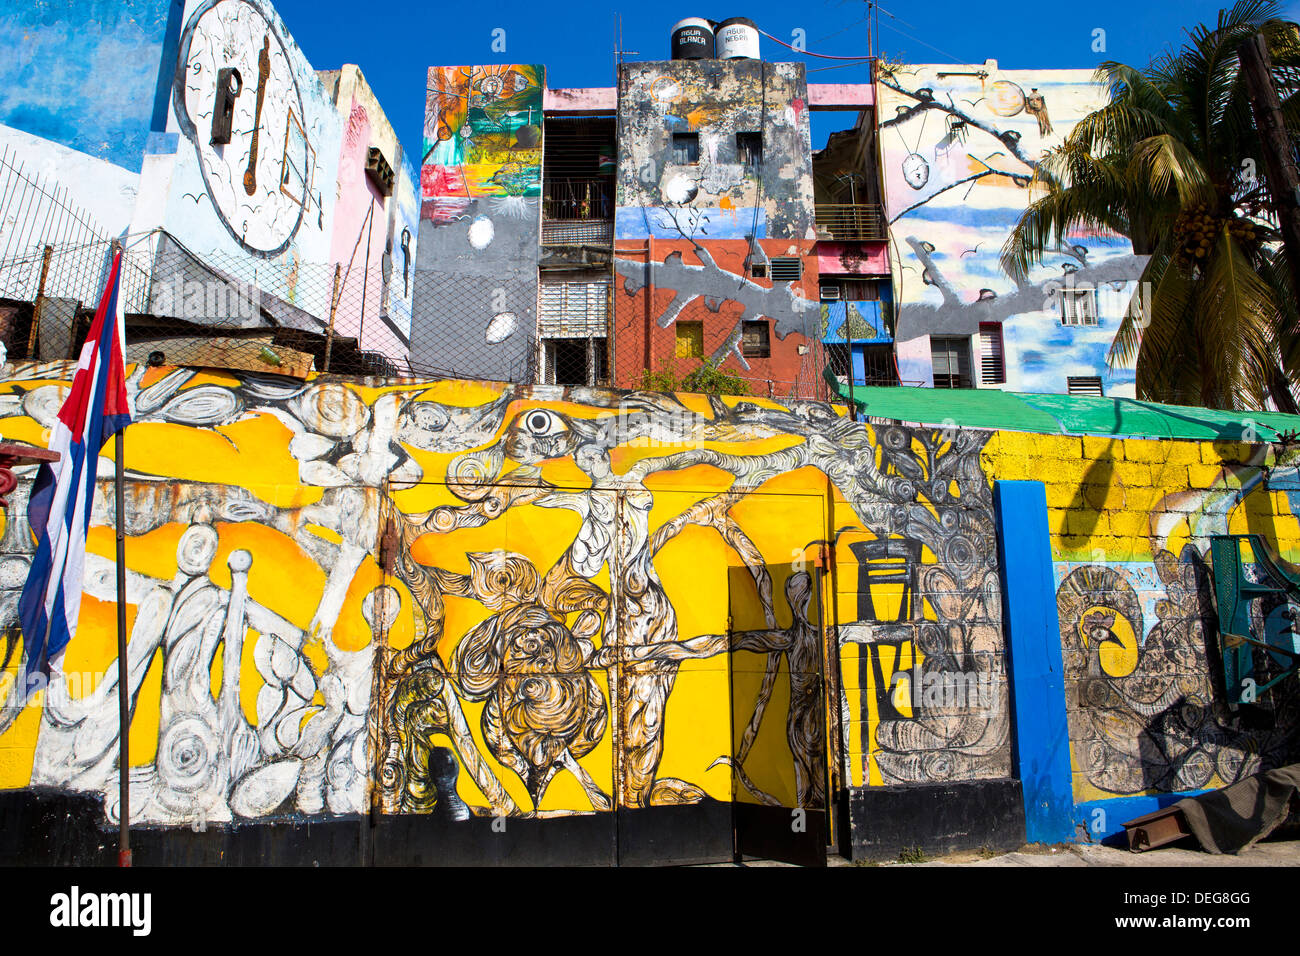 Murs peints avec de l'art afro-antillaise, Callejon de Hamel, un quartier de La Havane, Cuba, Antilles, Amérique Centrale Banque D'Images